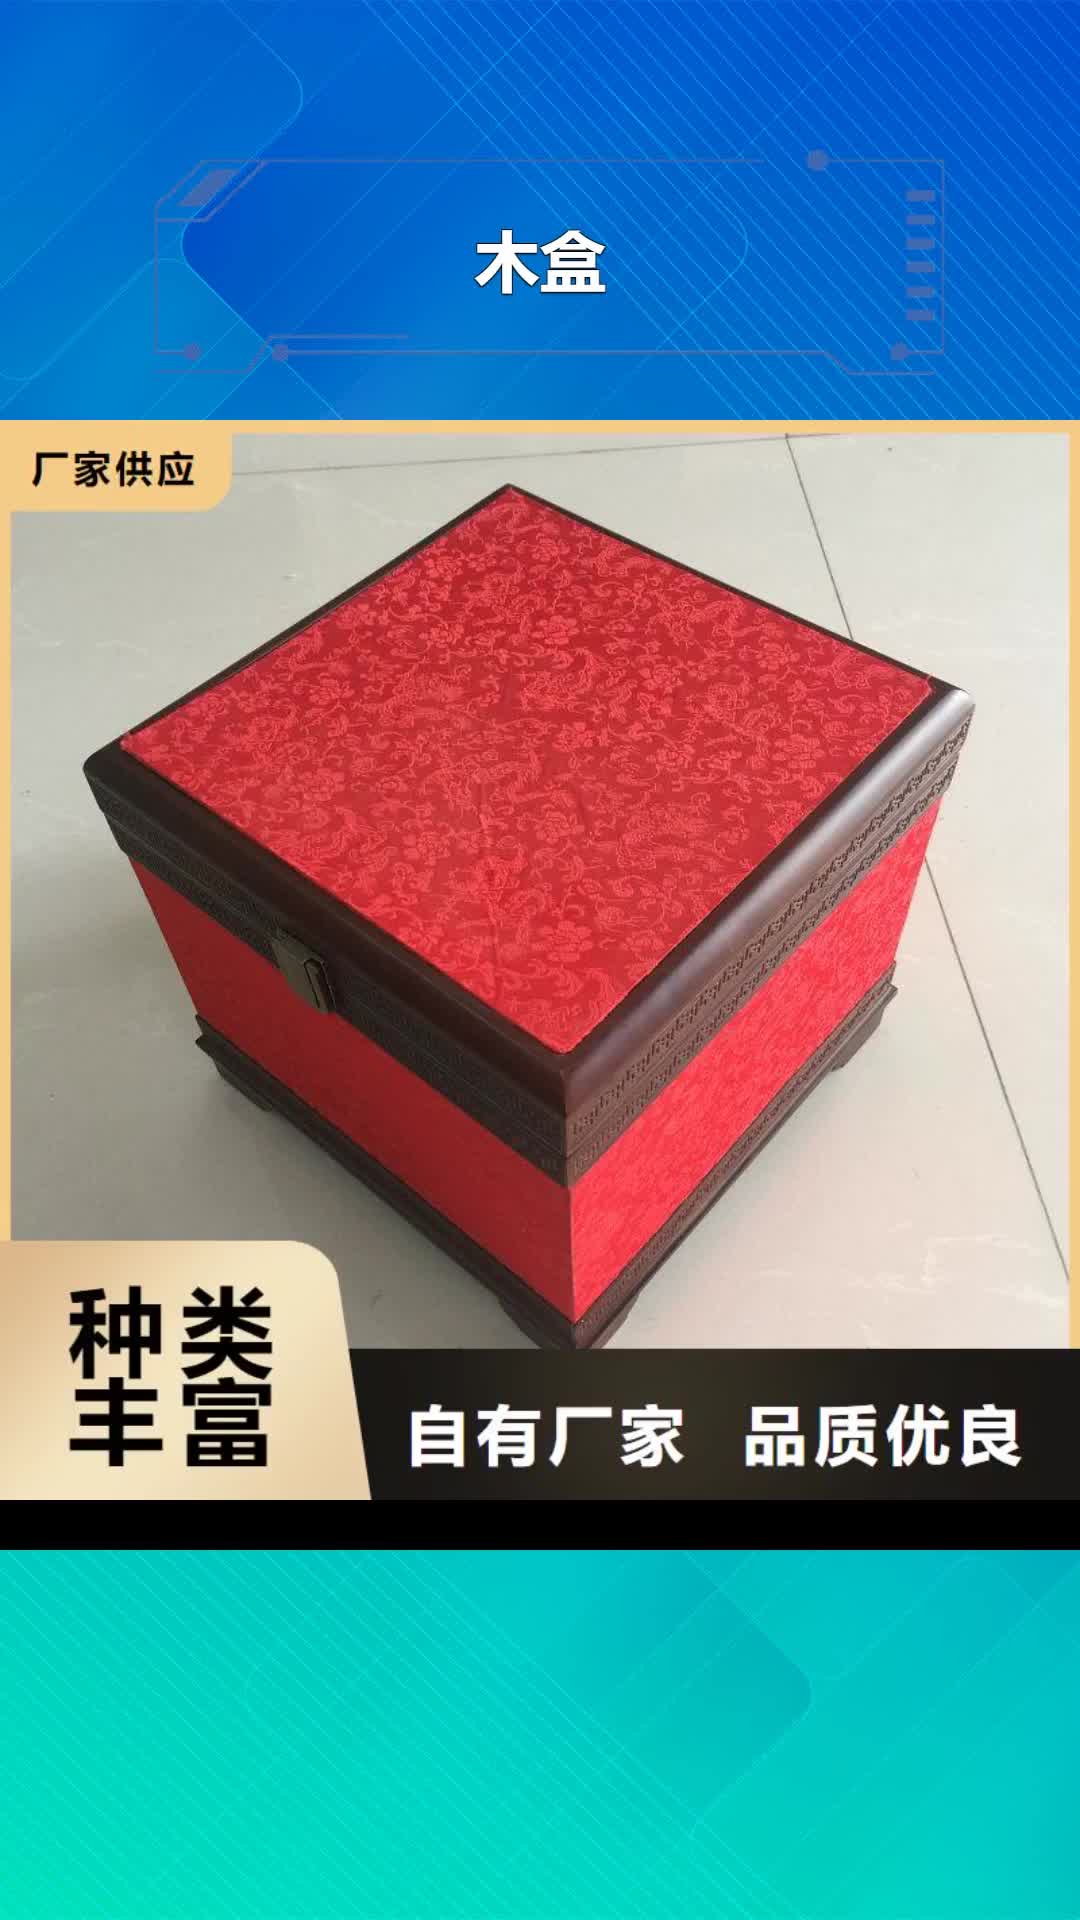 湛江【木盒】,防伪定制种类齐全